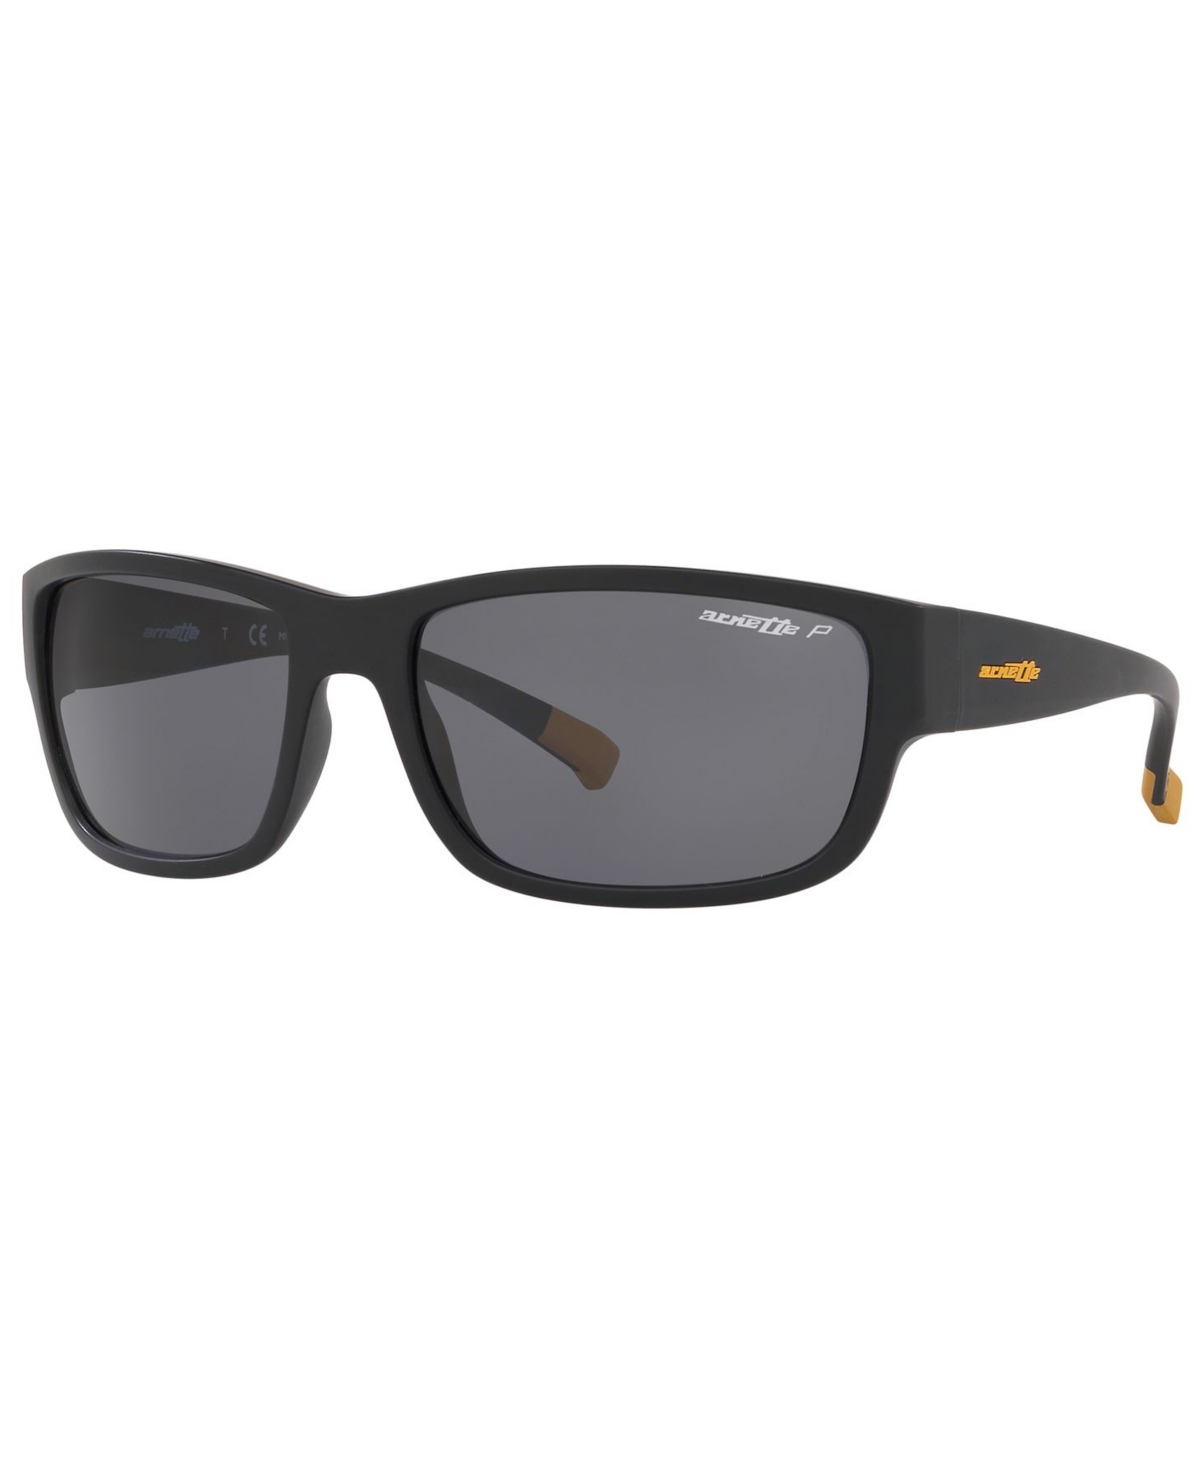 Polarized Sunglasses, AN4256 62 - BLACK/POLAR GREY